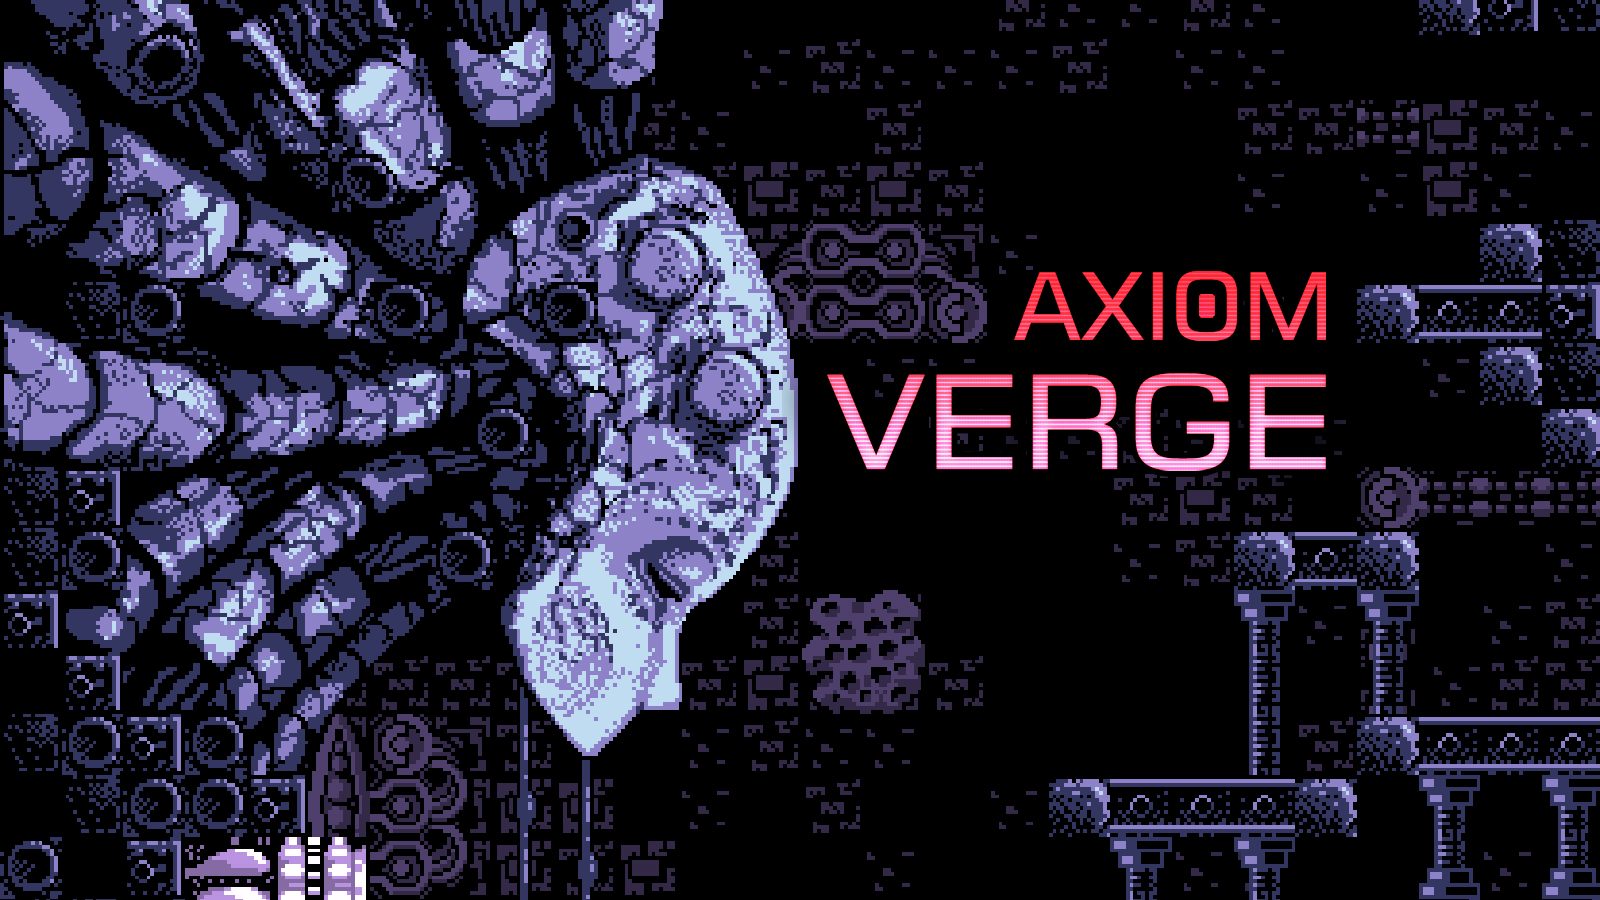 Axiom Verge é listado na eShop européia para 05 de Outubro; Tamanho do jogo revelado [Switch/WiiU]